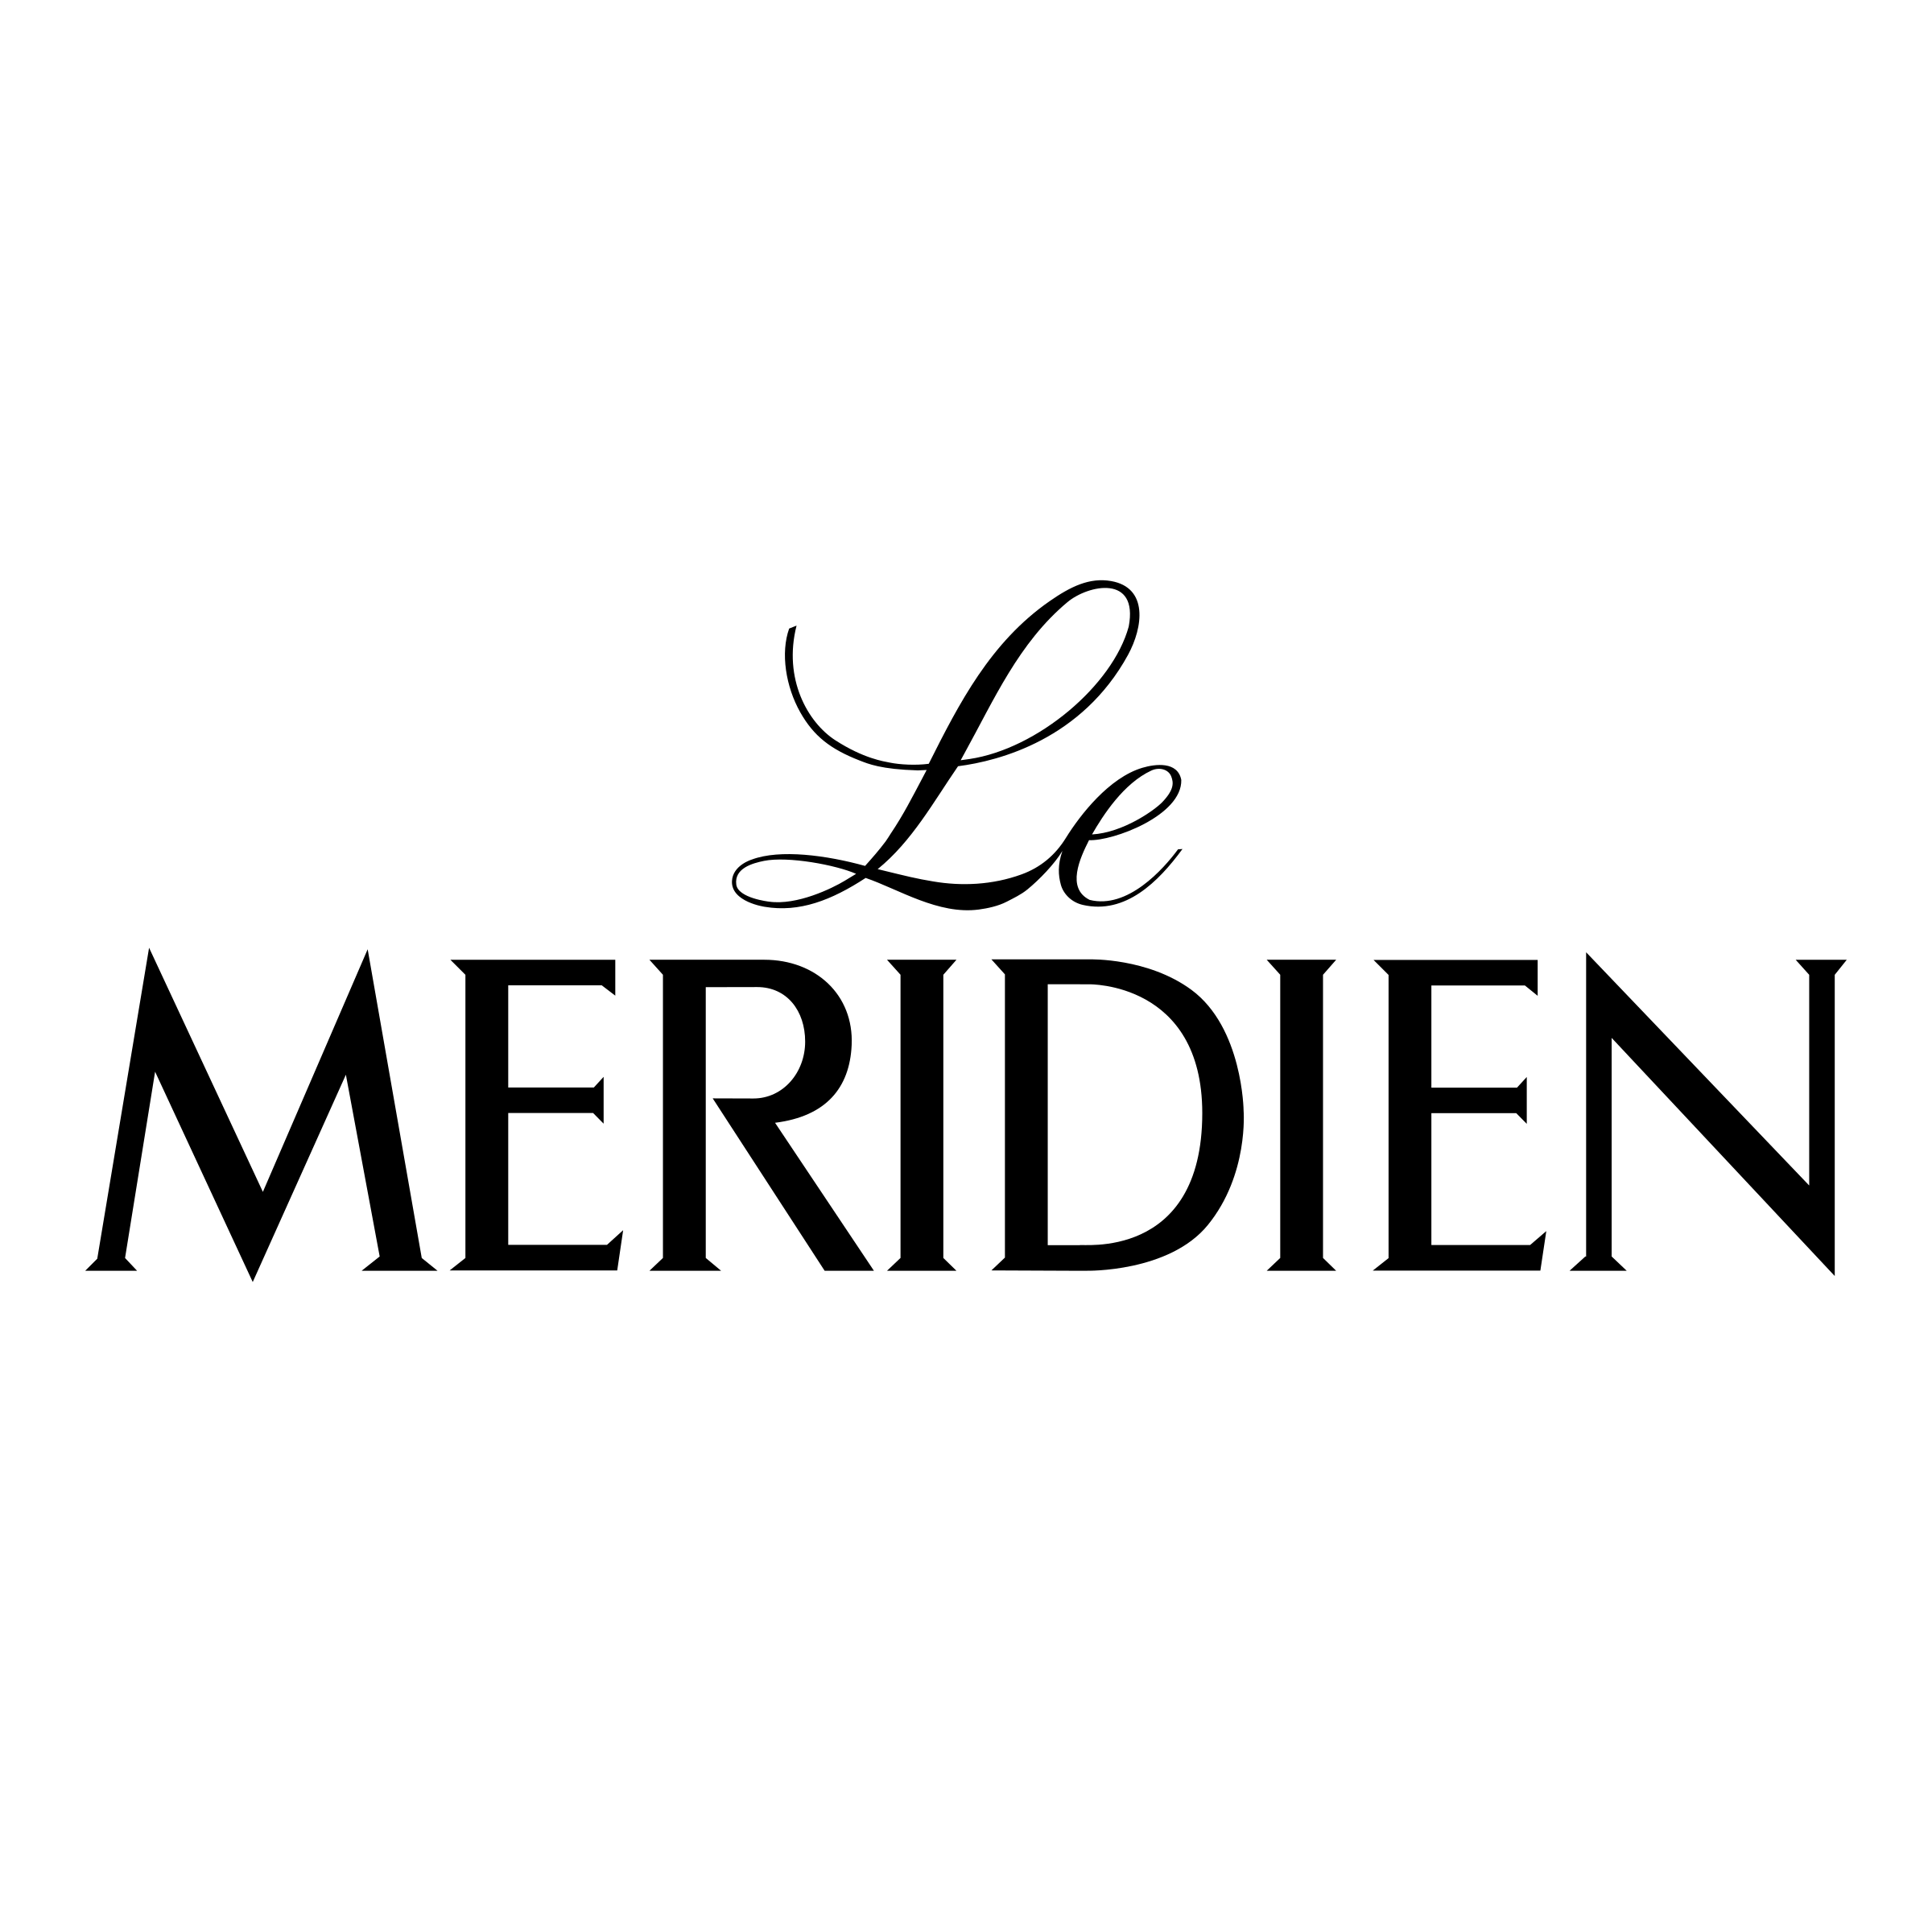 le-meridien-logo-png-transparent